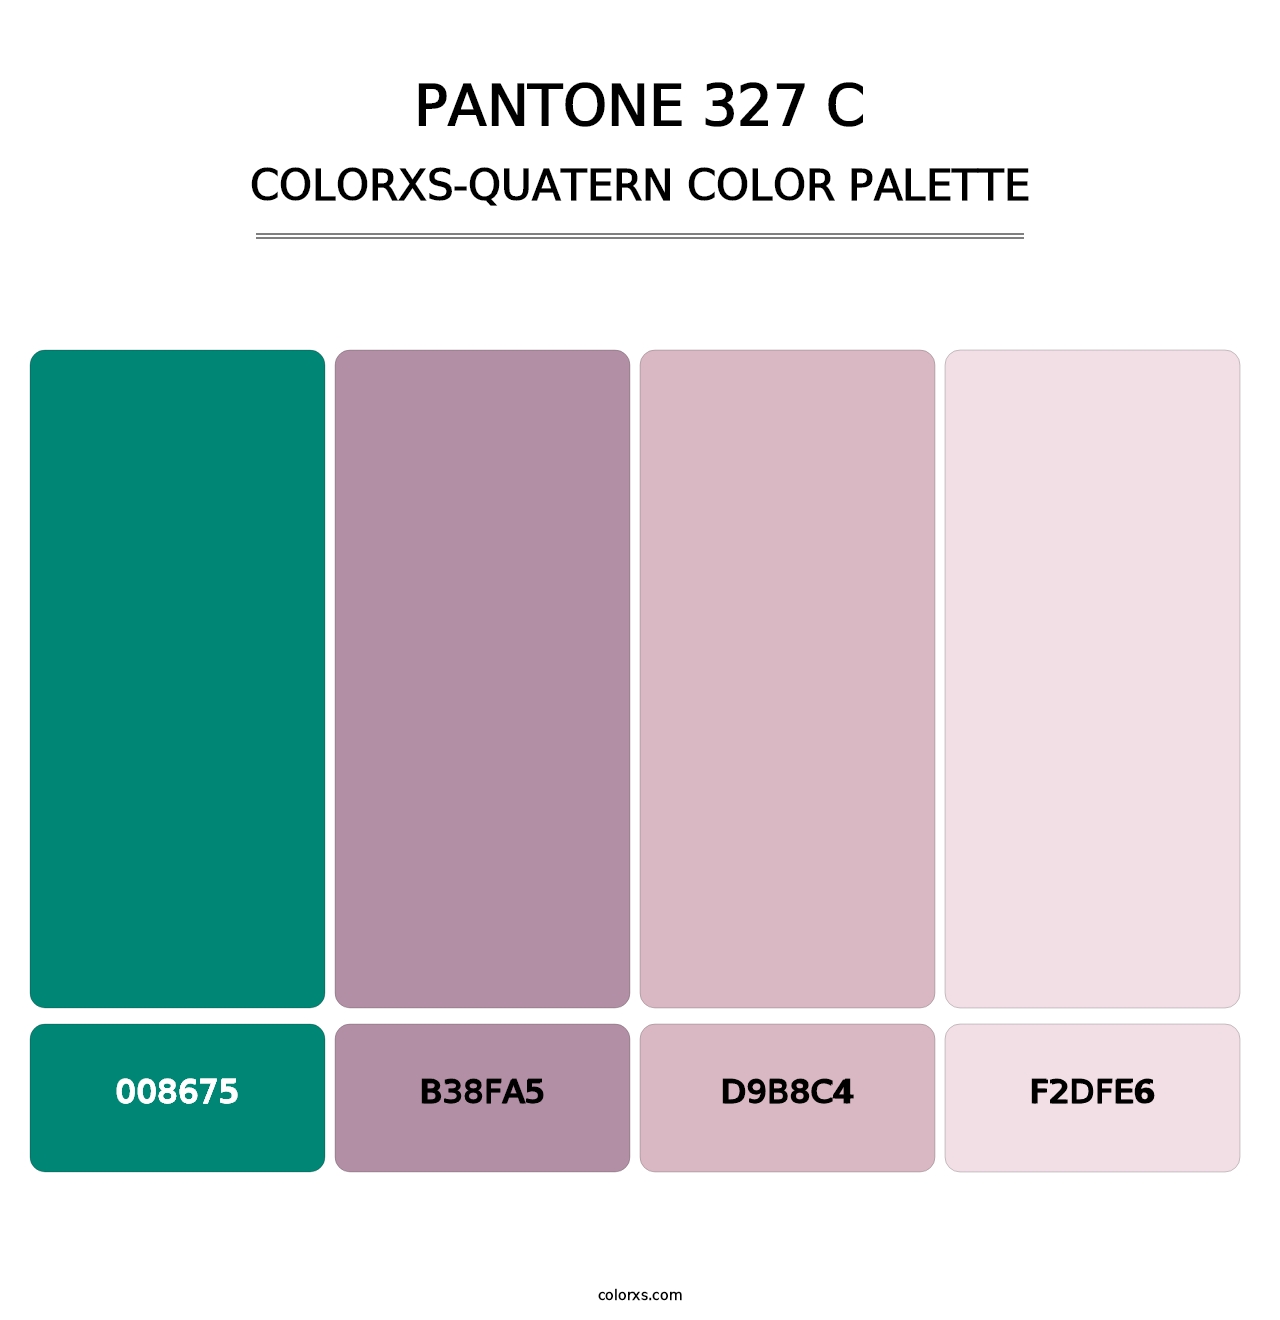 PANTONE 327 C - Colorxs Quatern Palette